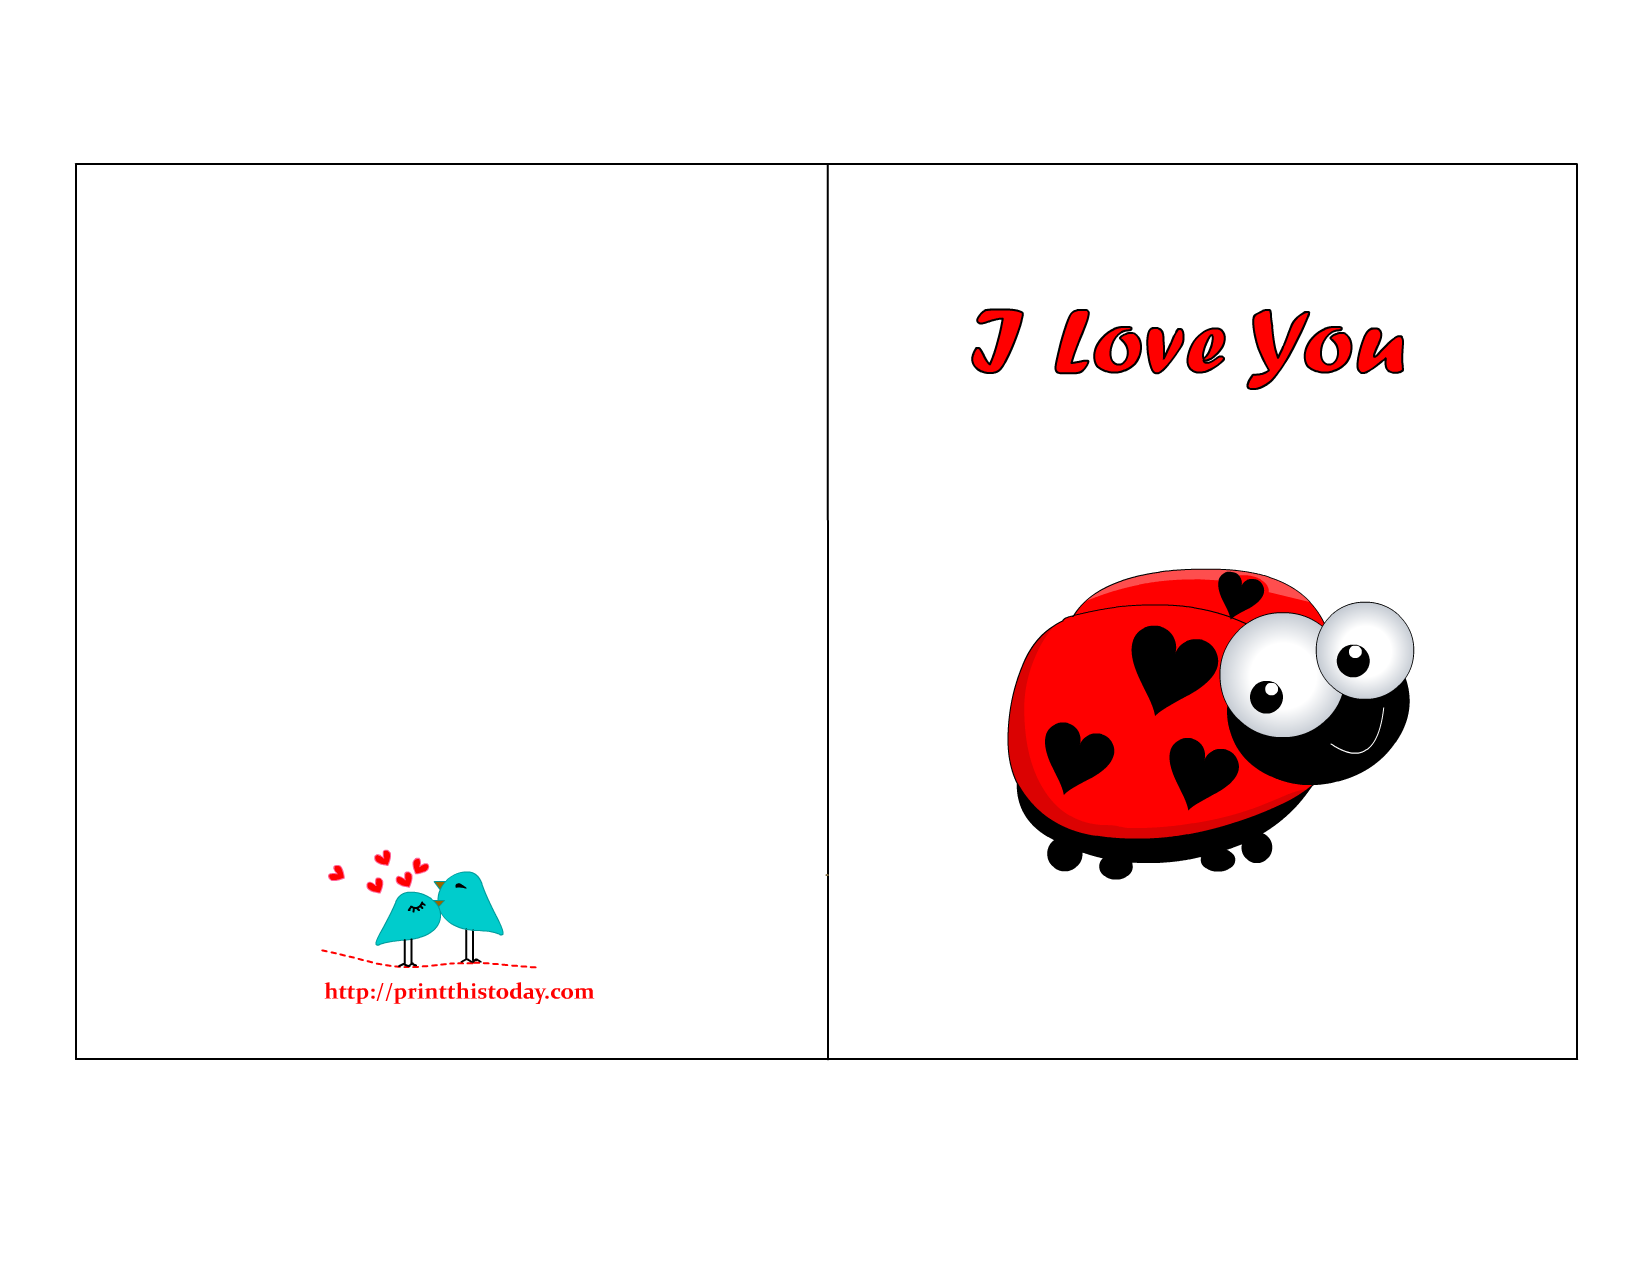 Free Printable "I love you" card with Ladybug